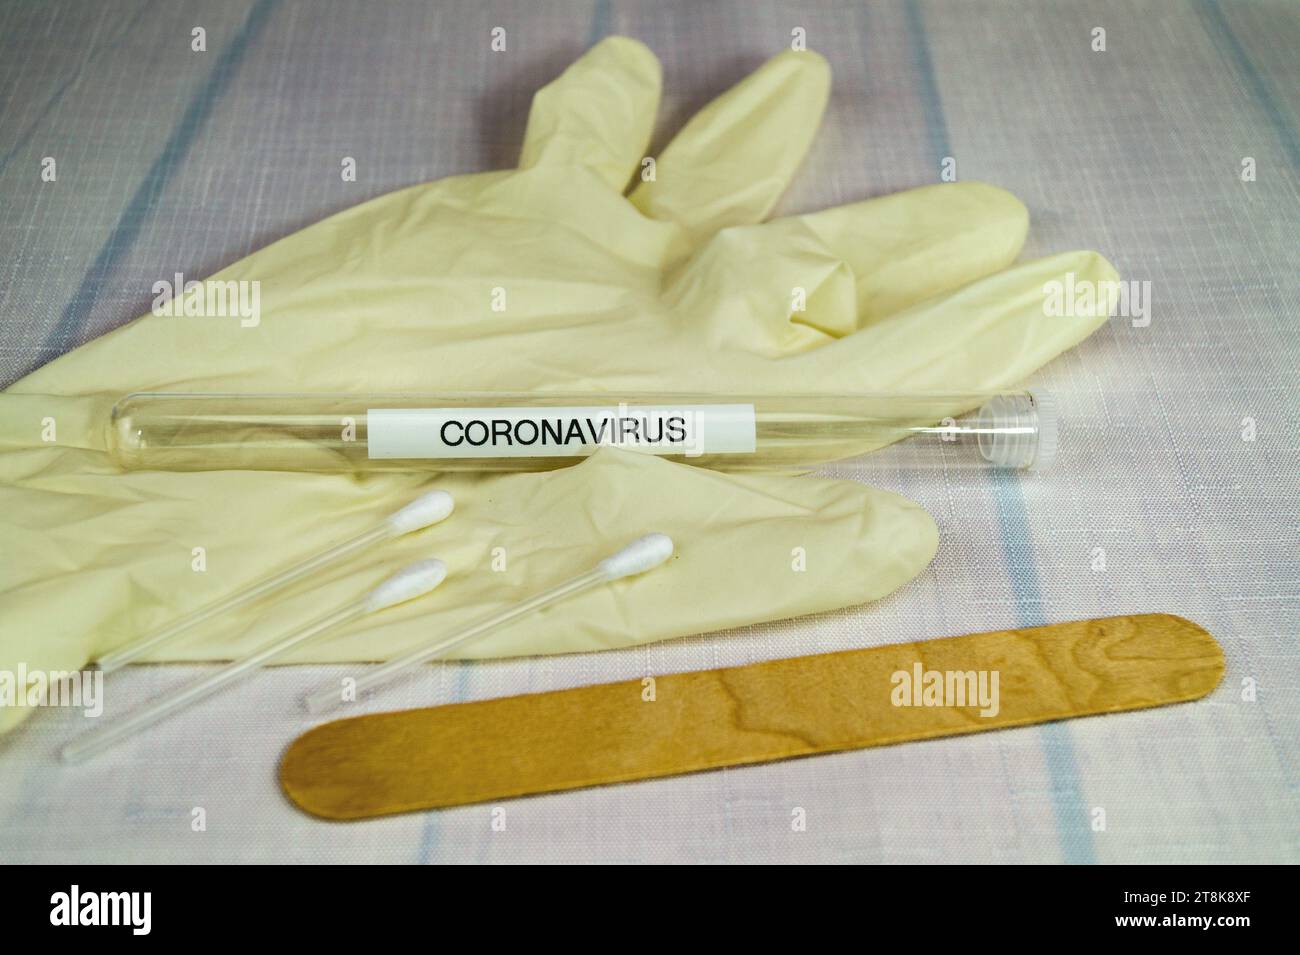 Corona test tubule, latex glove, cotton swab and spatula Stock Photo